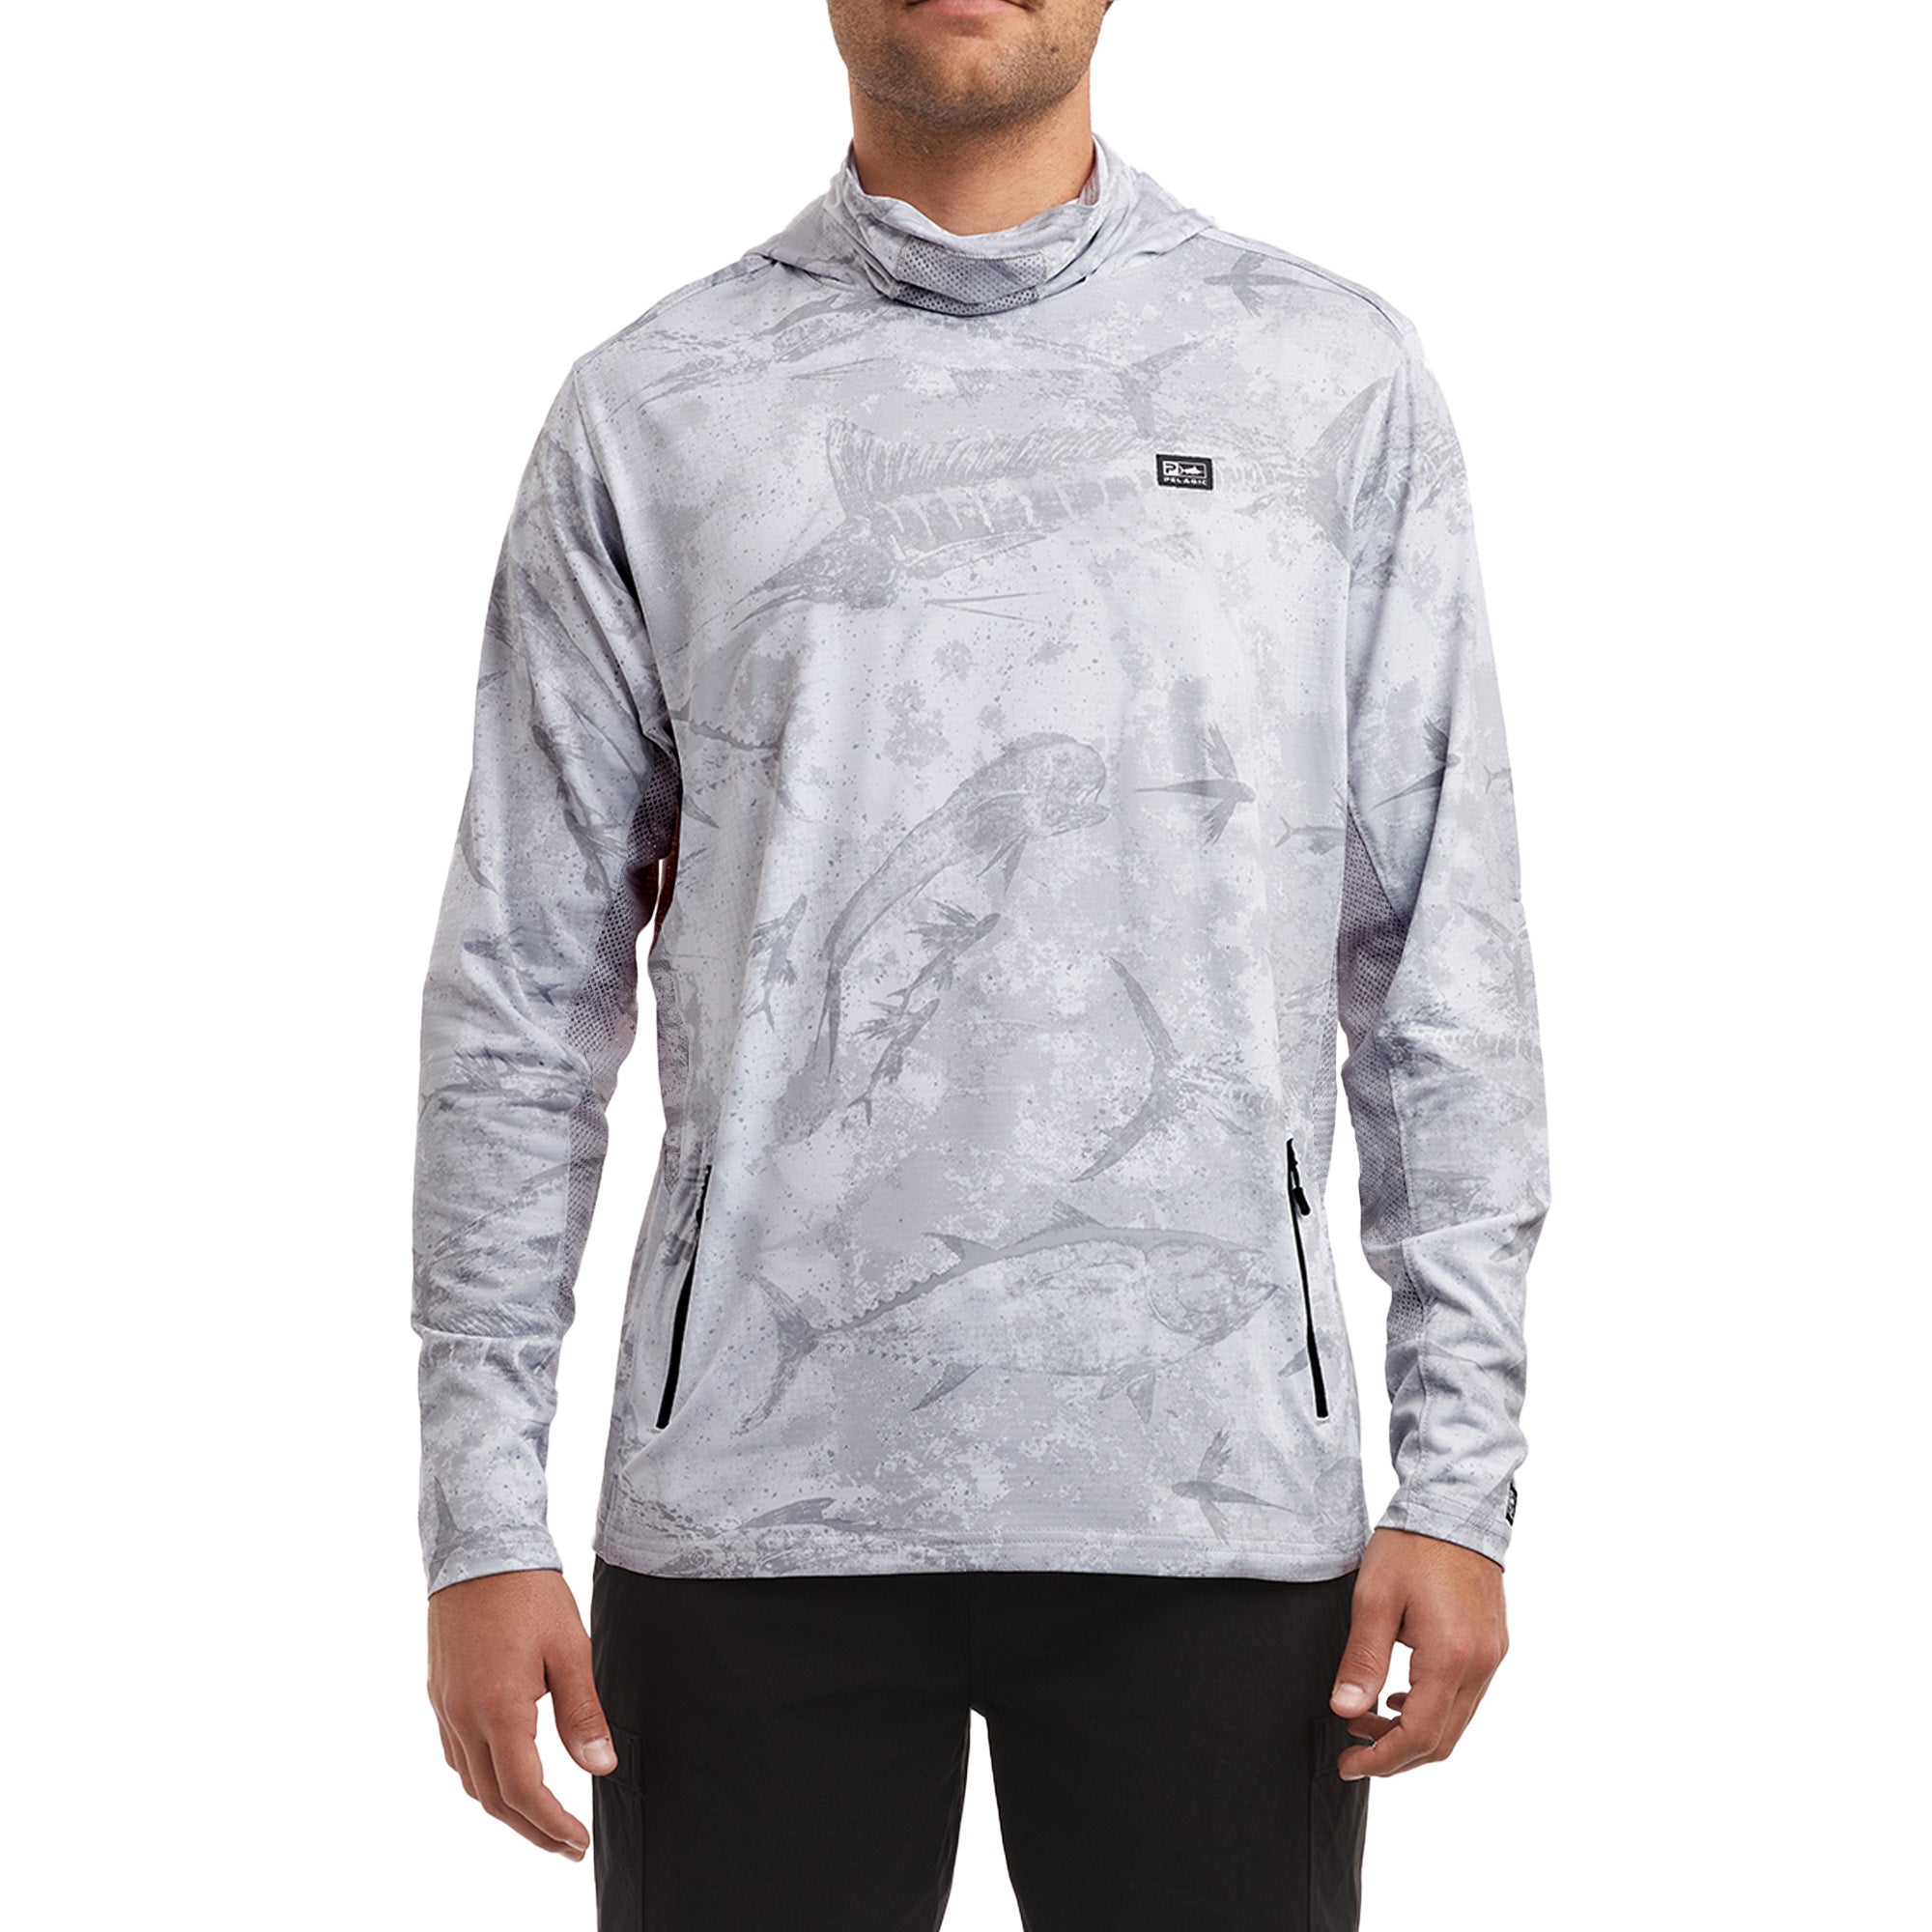 Pelagic Exo-Tech Fishing Long-Sleeve Shirt for Men - Light Grey